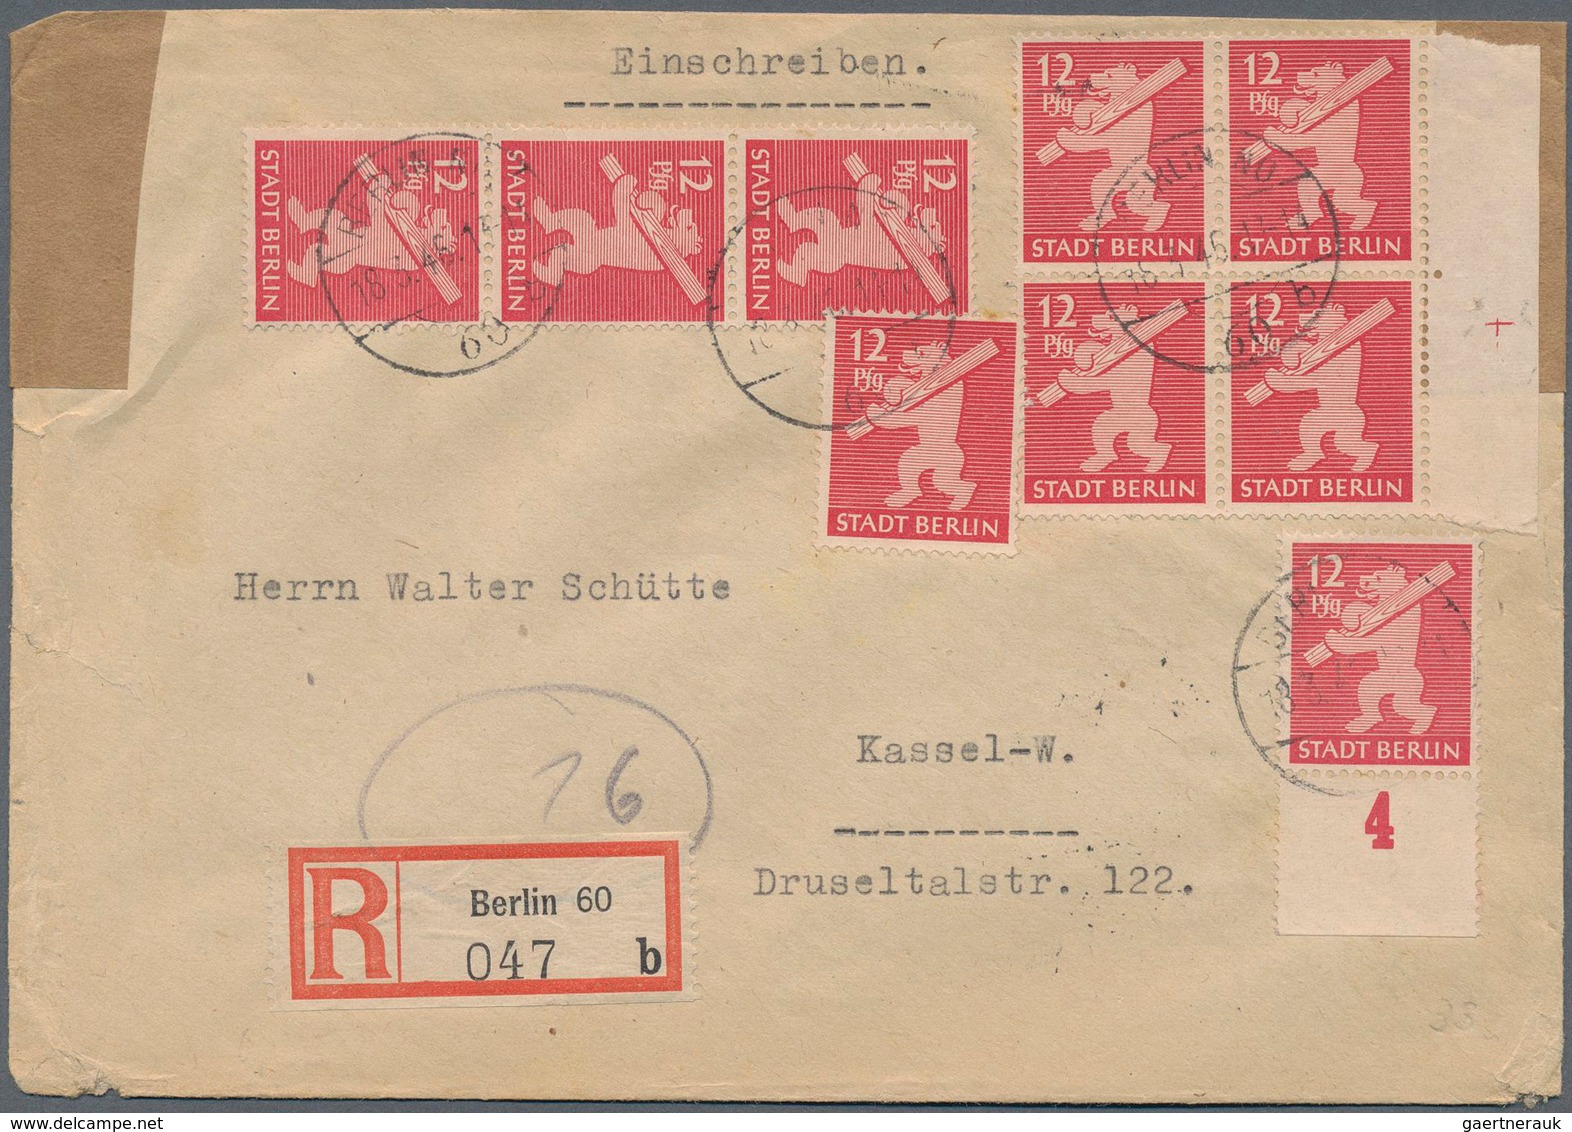 32245 Sowjetische Zone - Berlin und Brandenburg: 1945, Einzel- und Mehrfachfrankaturen: Spezialsammlung mi